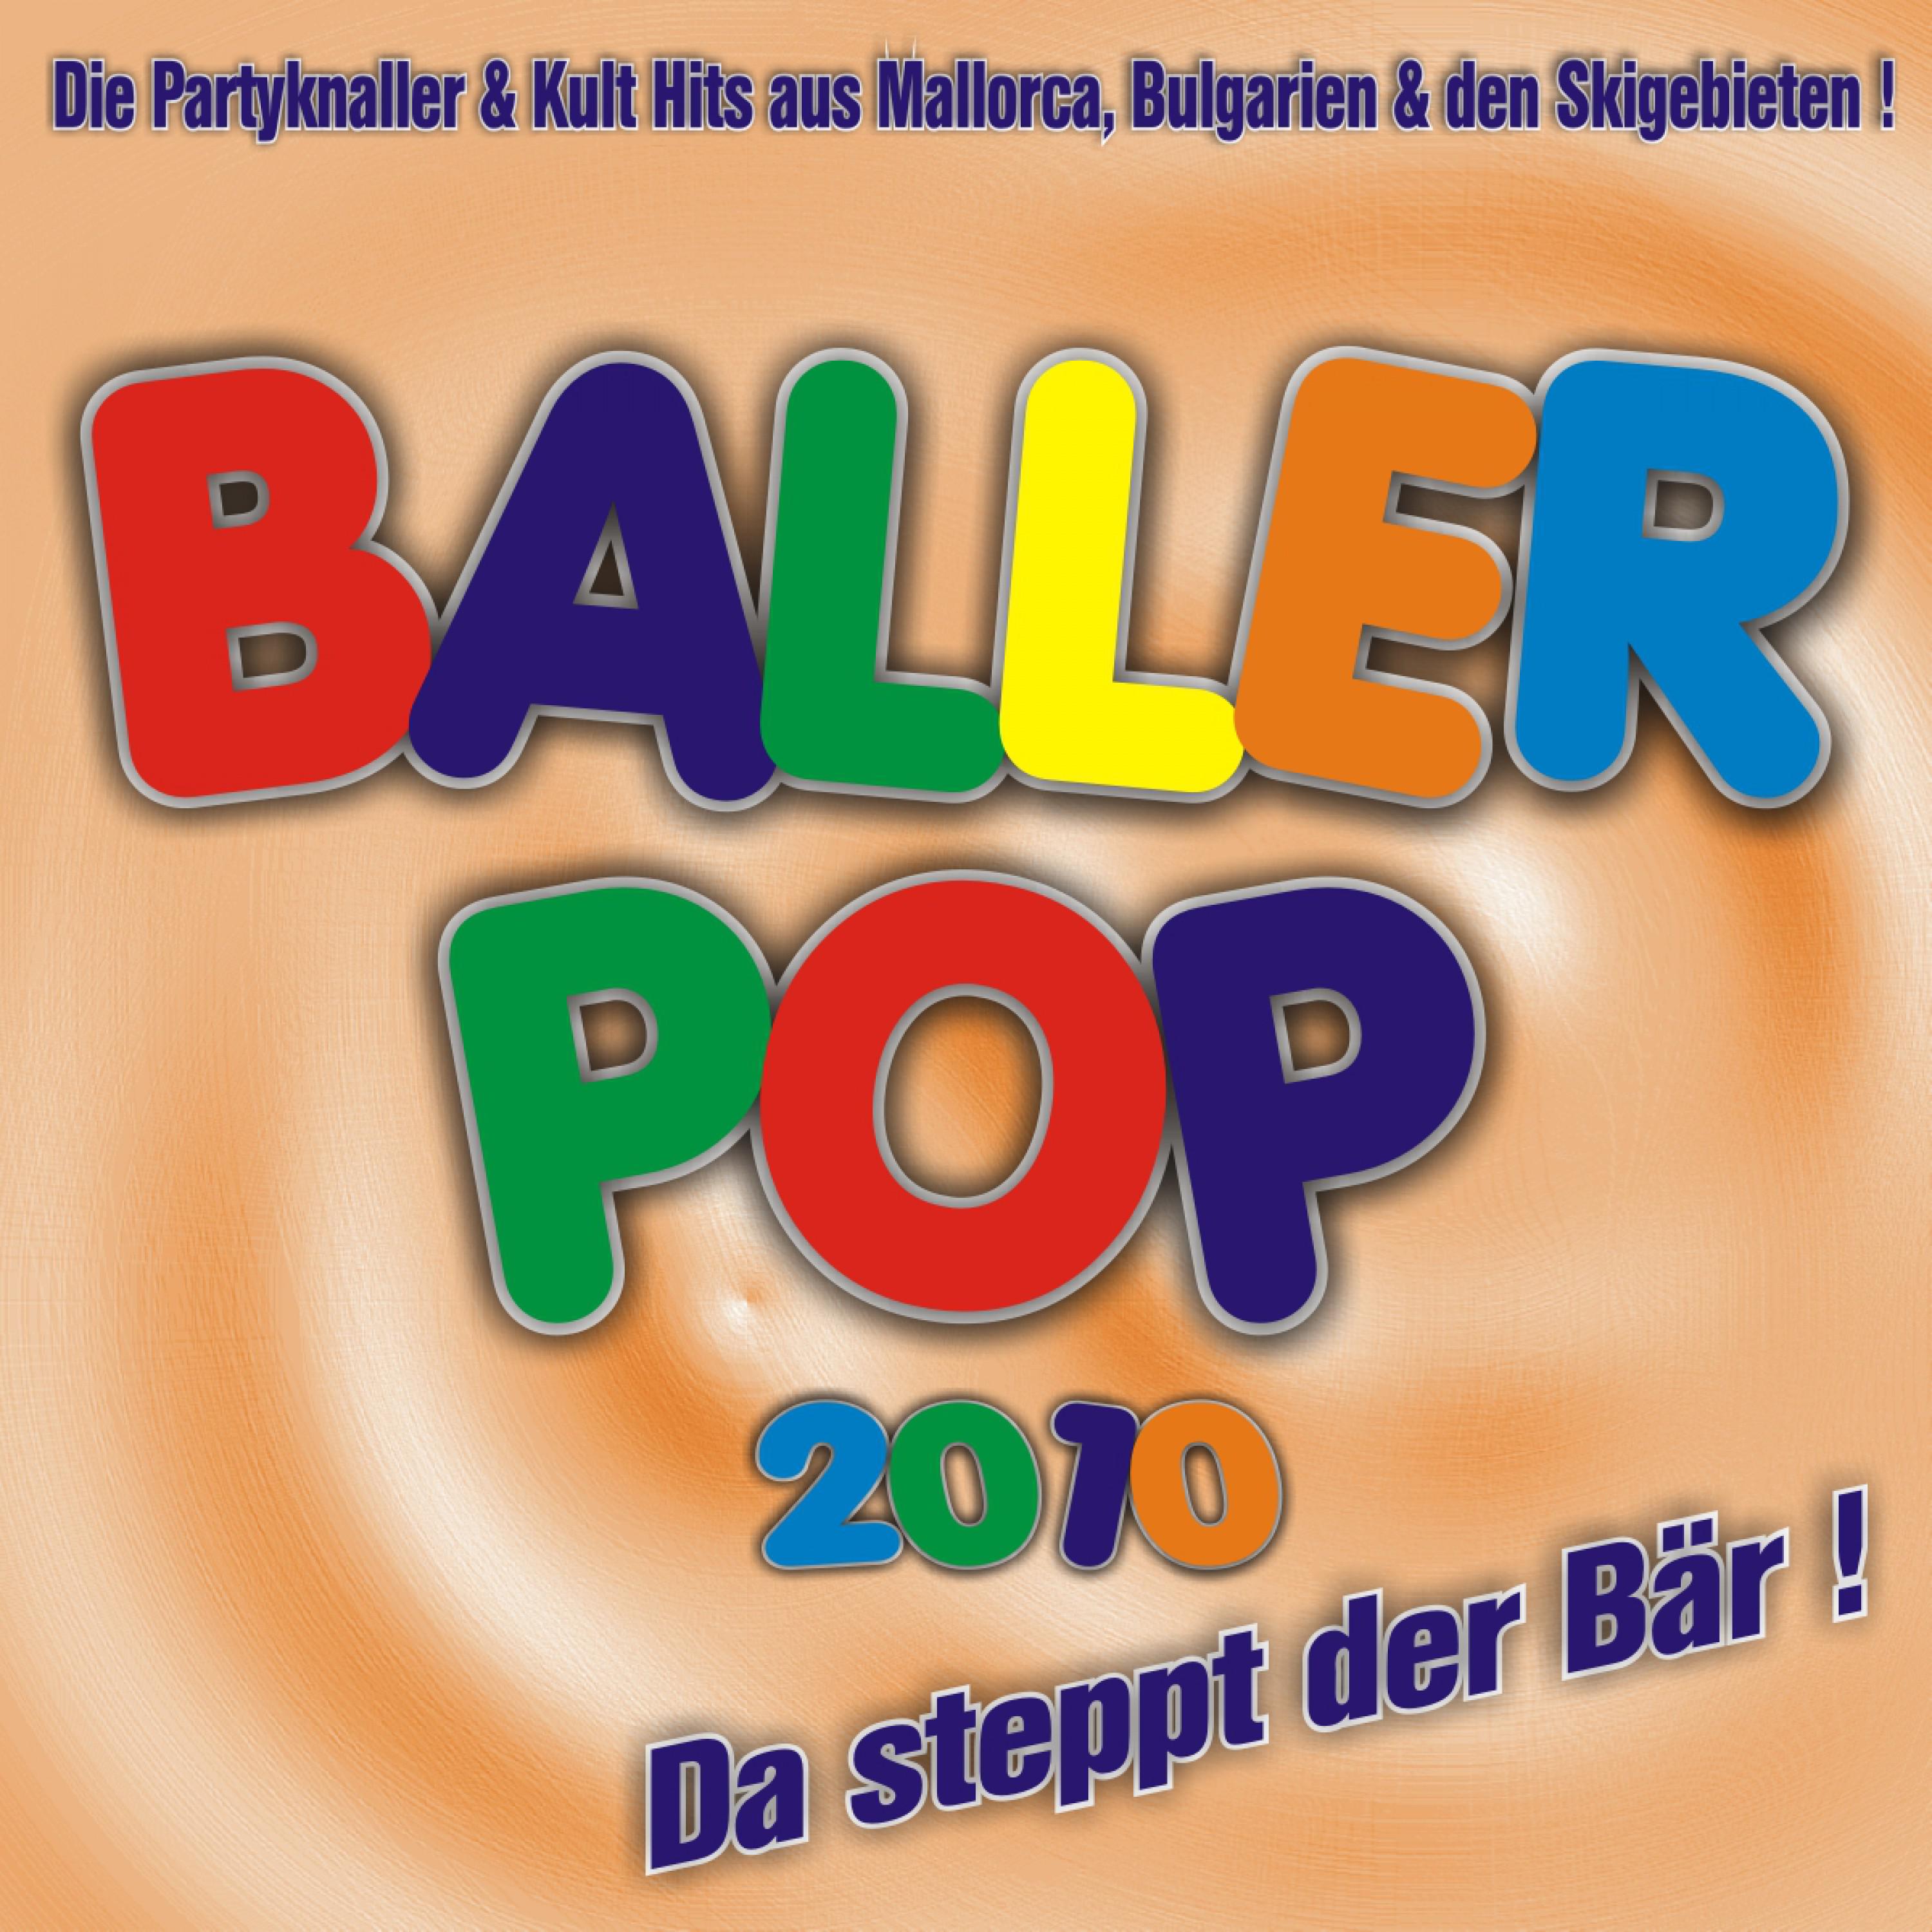 Baller Pop 2010  Da steppt der B r ! Die Partyknaller  Kult Hits aus Mallorca, Bulgarien  den Skigebieten !